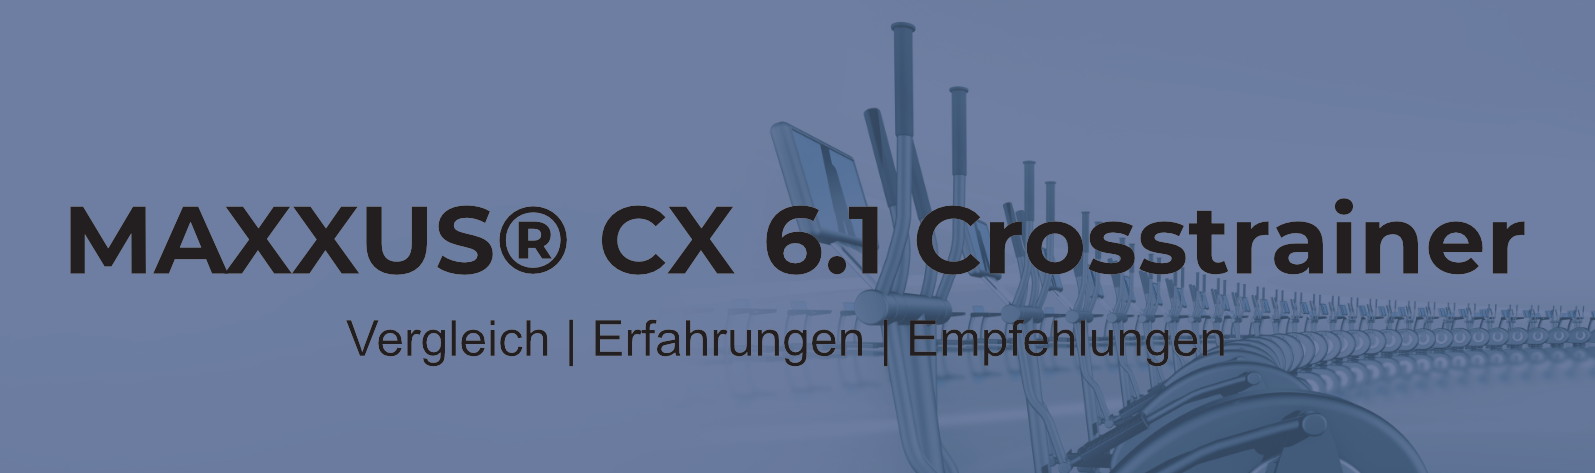 MAXXUS CROSSTRAINER CX 6.1